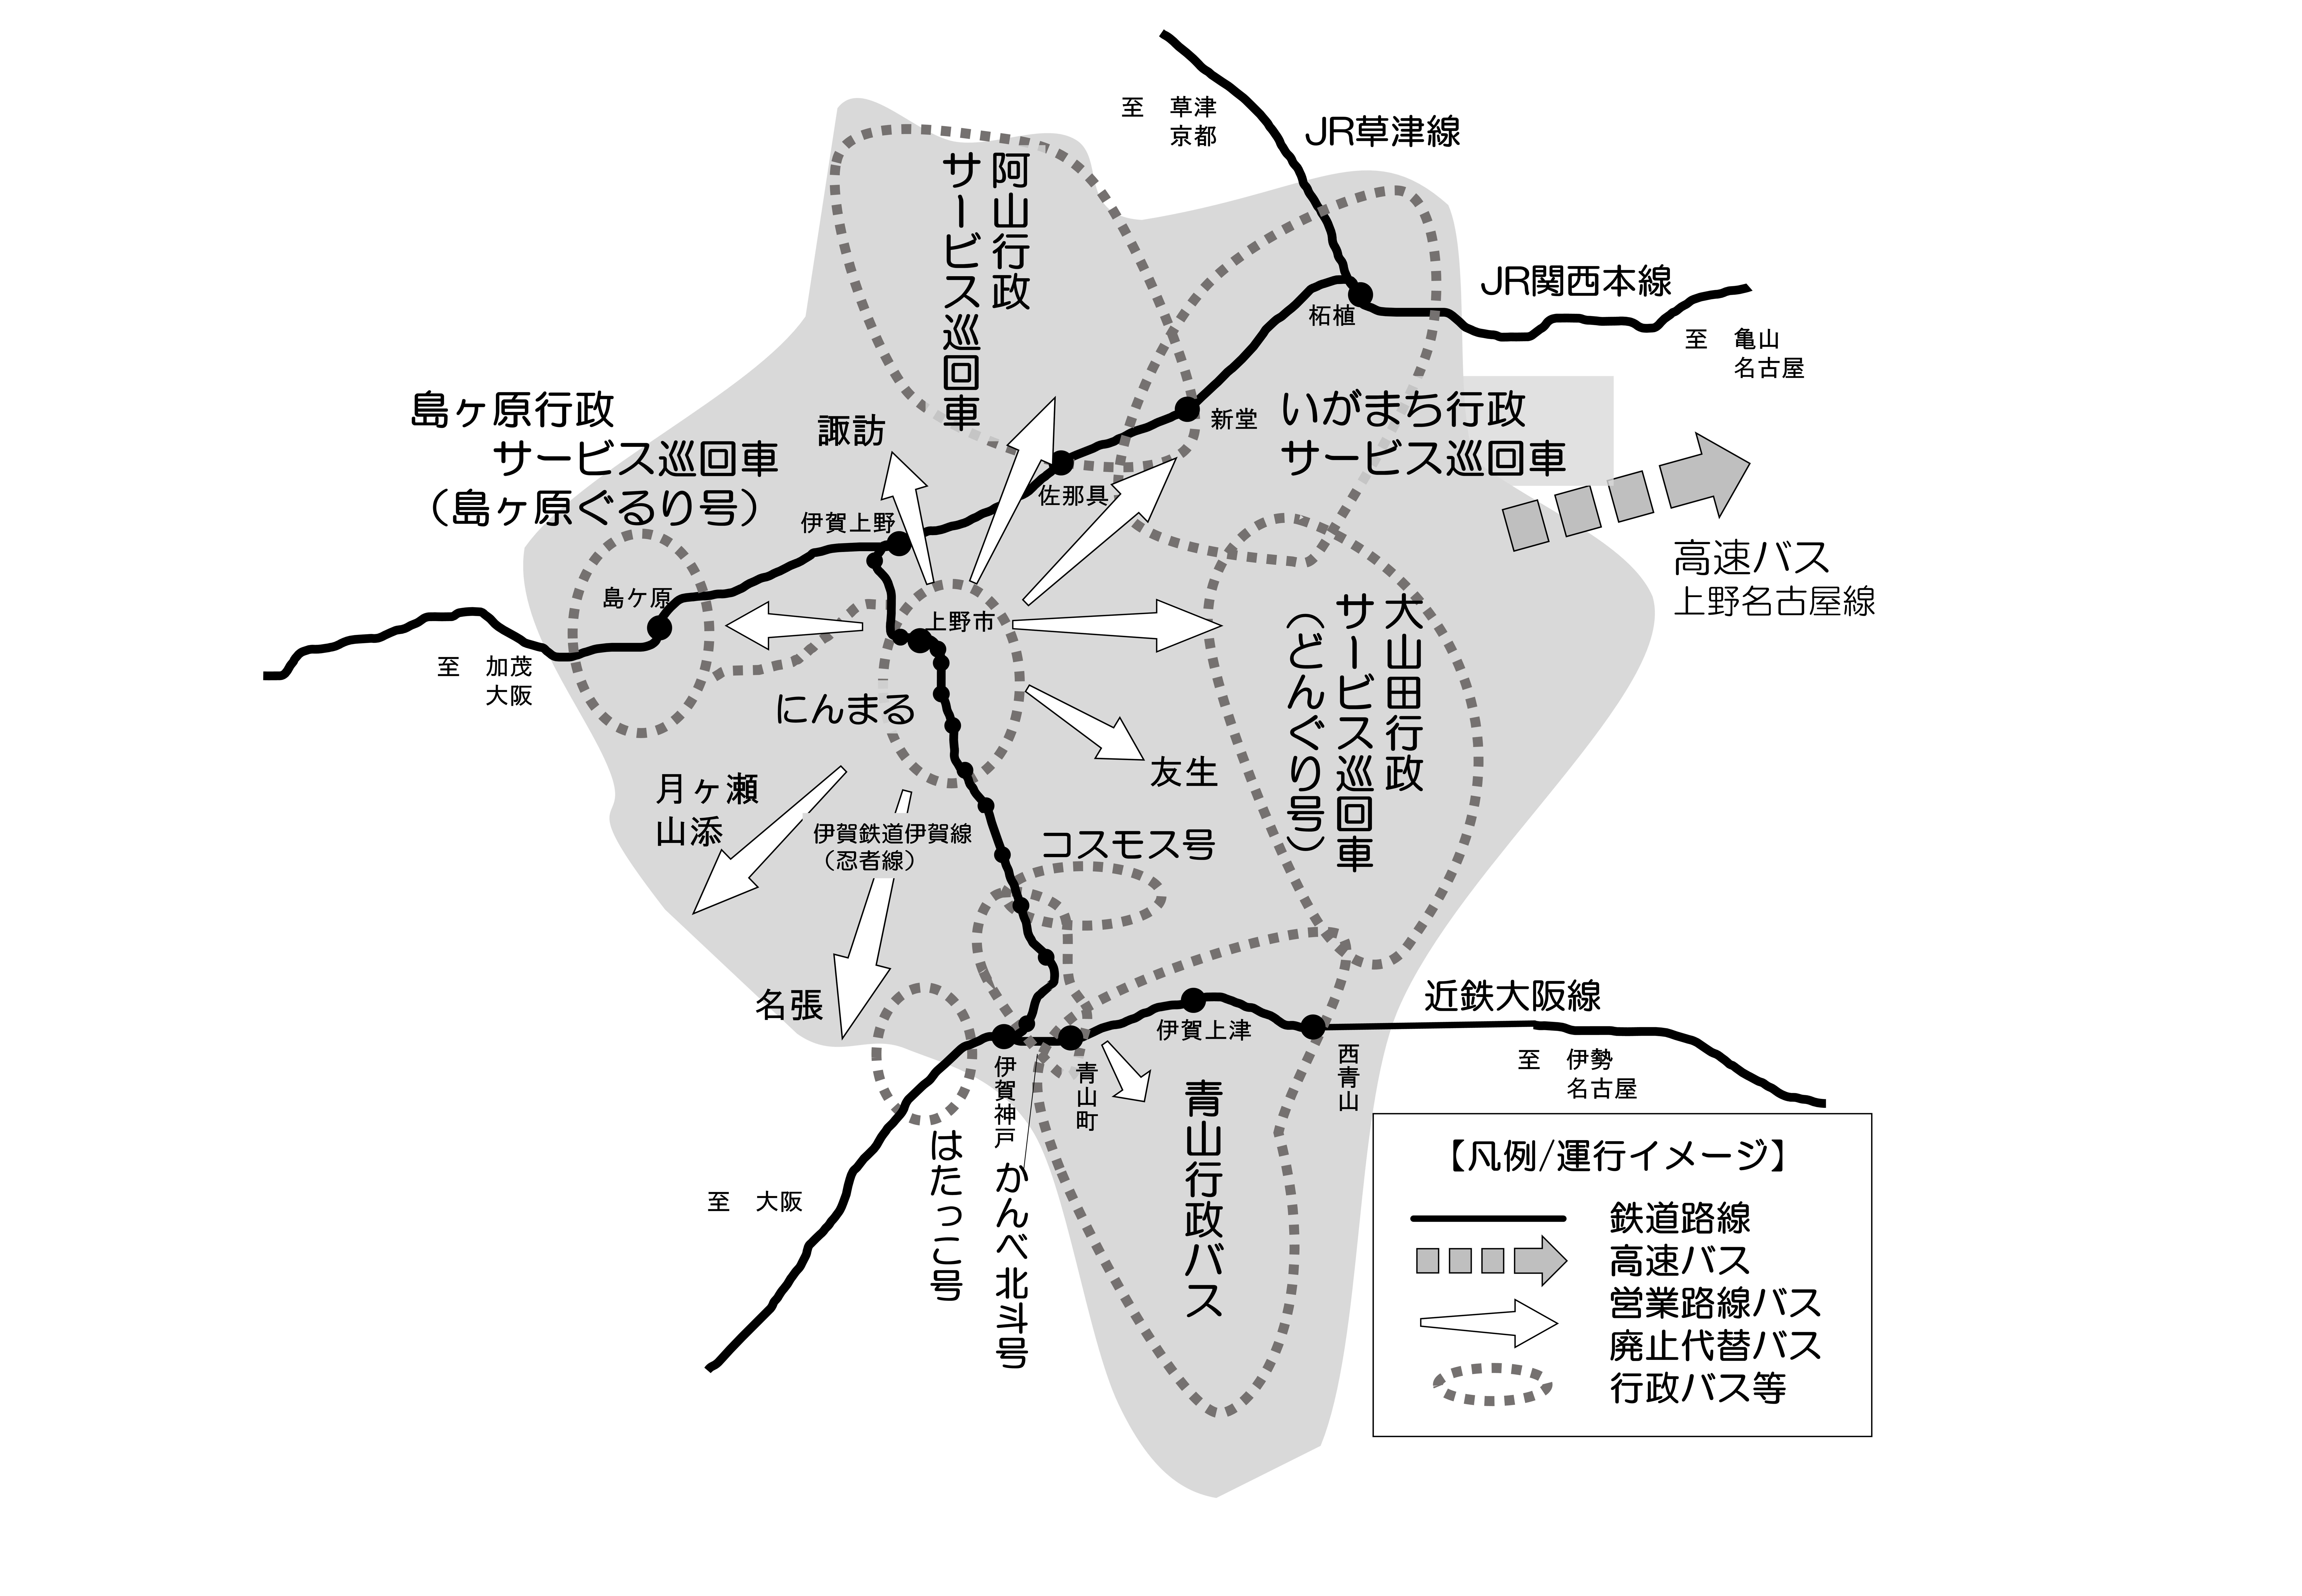 伊賀市の公共交通網イメージ図